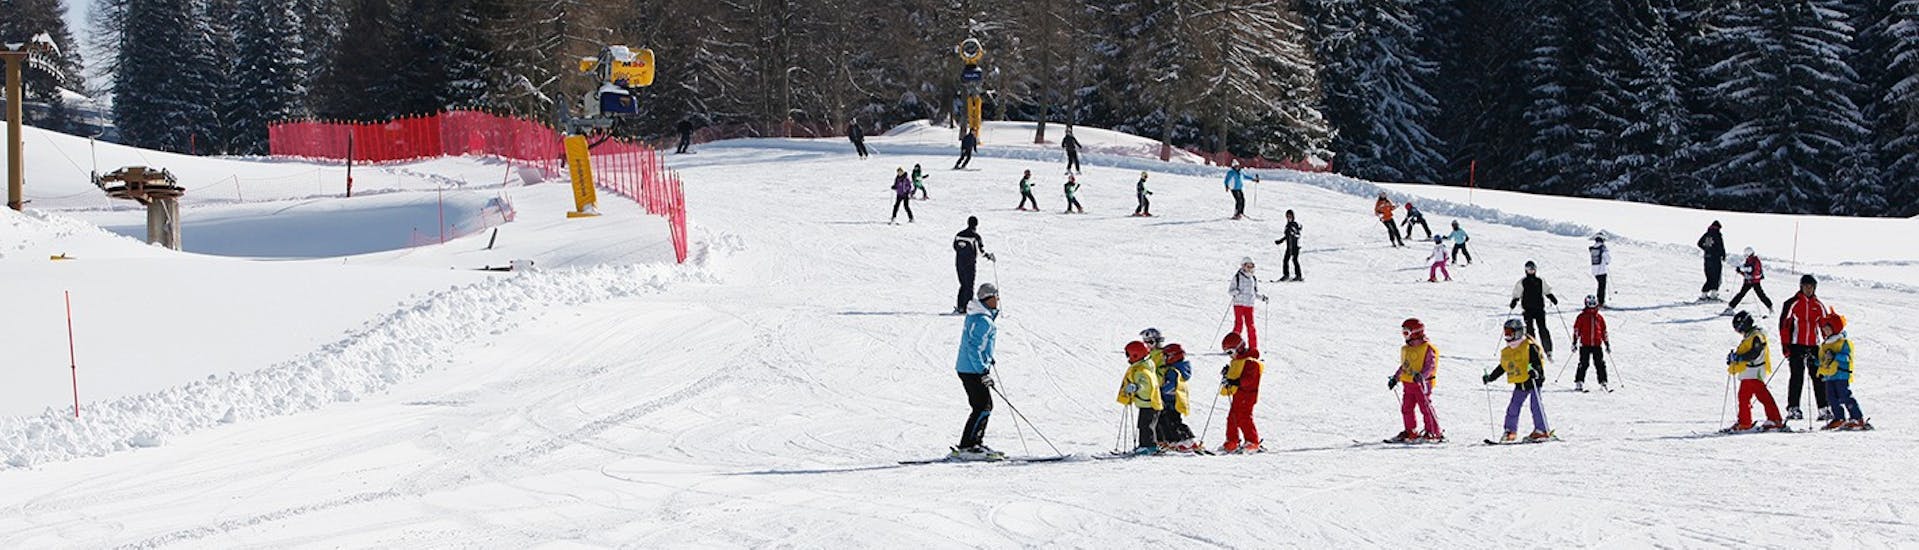 Lezioni di sci per bambini (6-14 anni) per tutti i livelli - Mezza giornata.